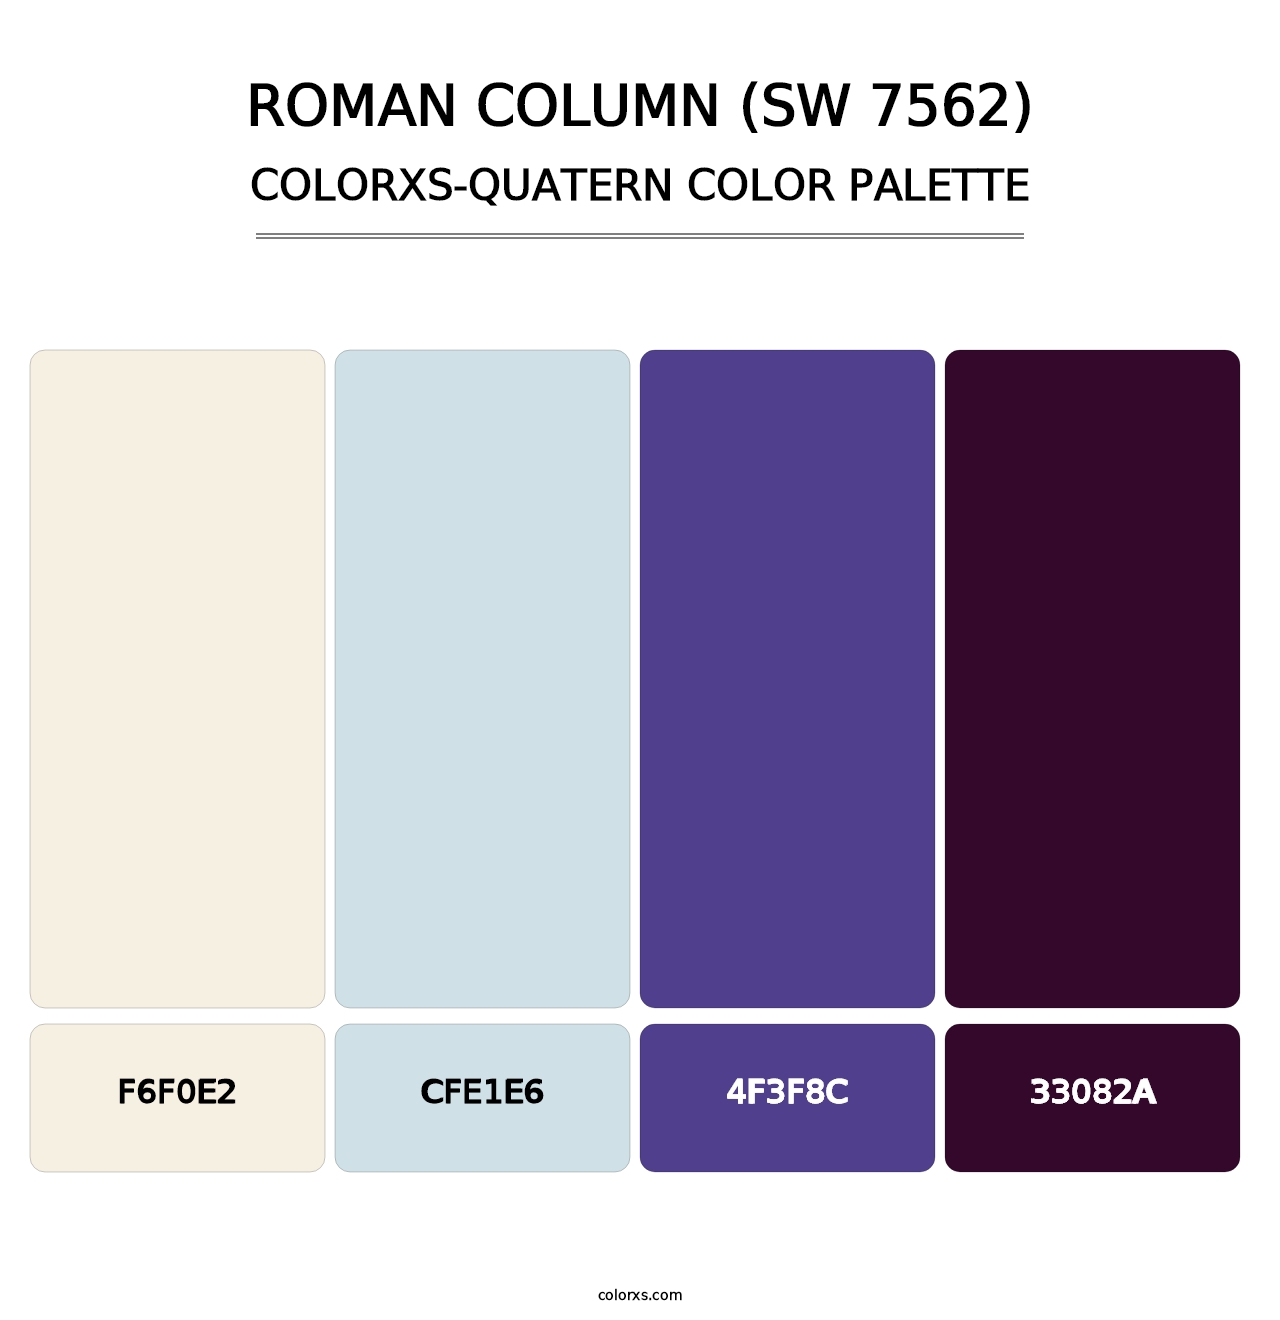 Roman Column (SW 7562) - Colorxs Quatern Palette